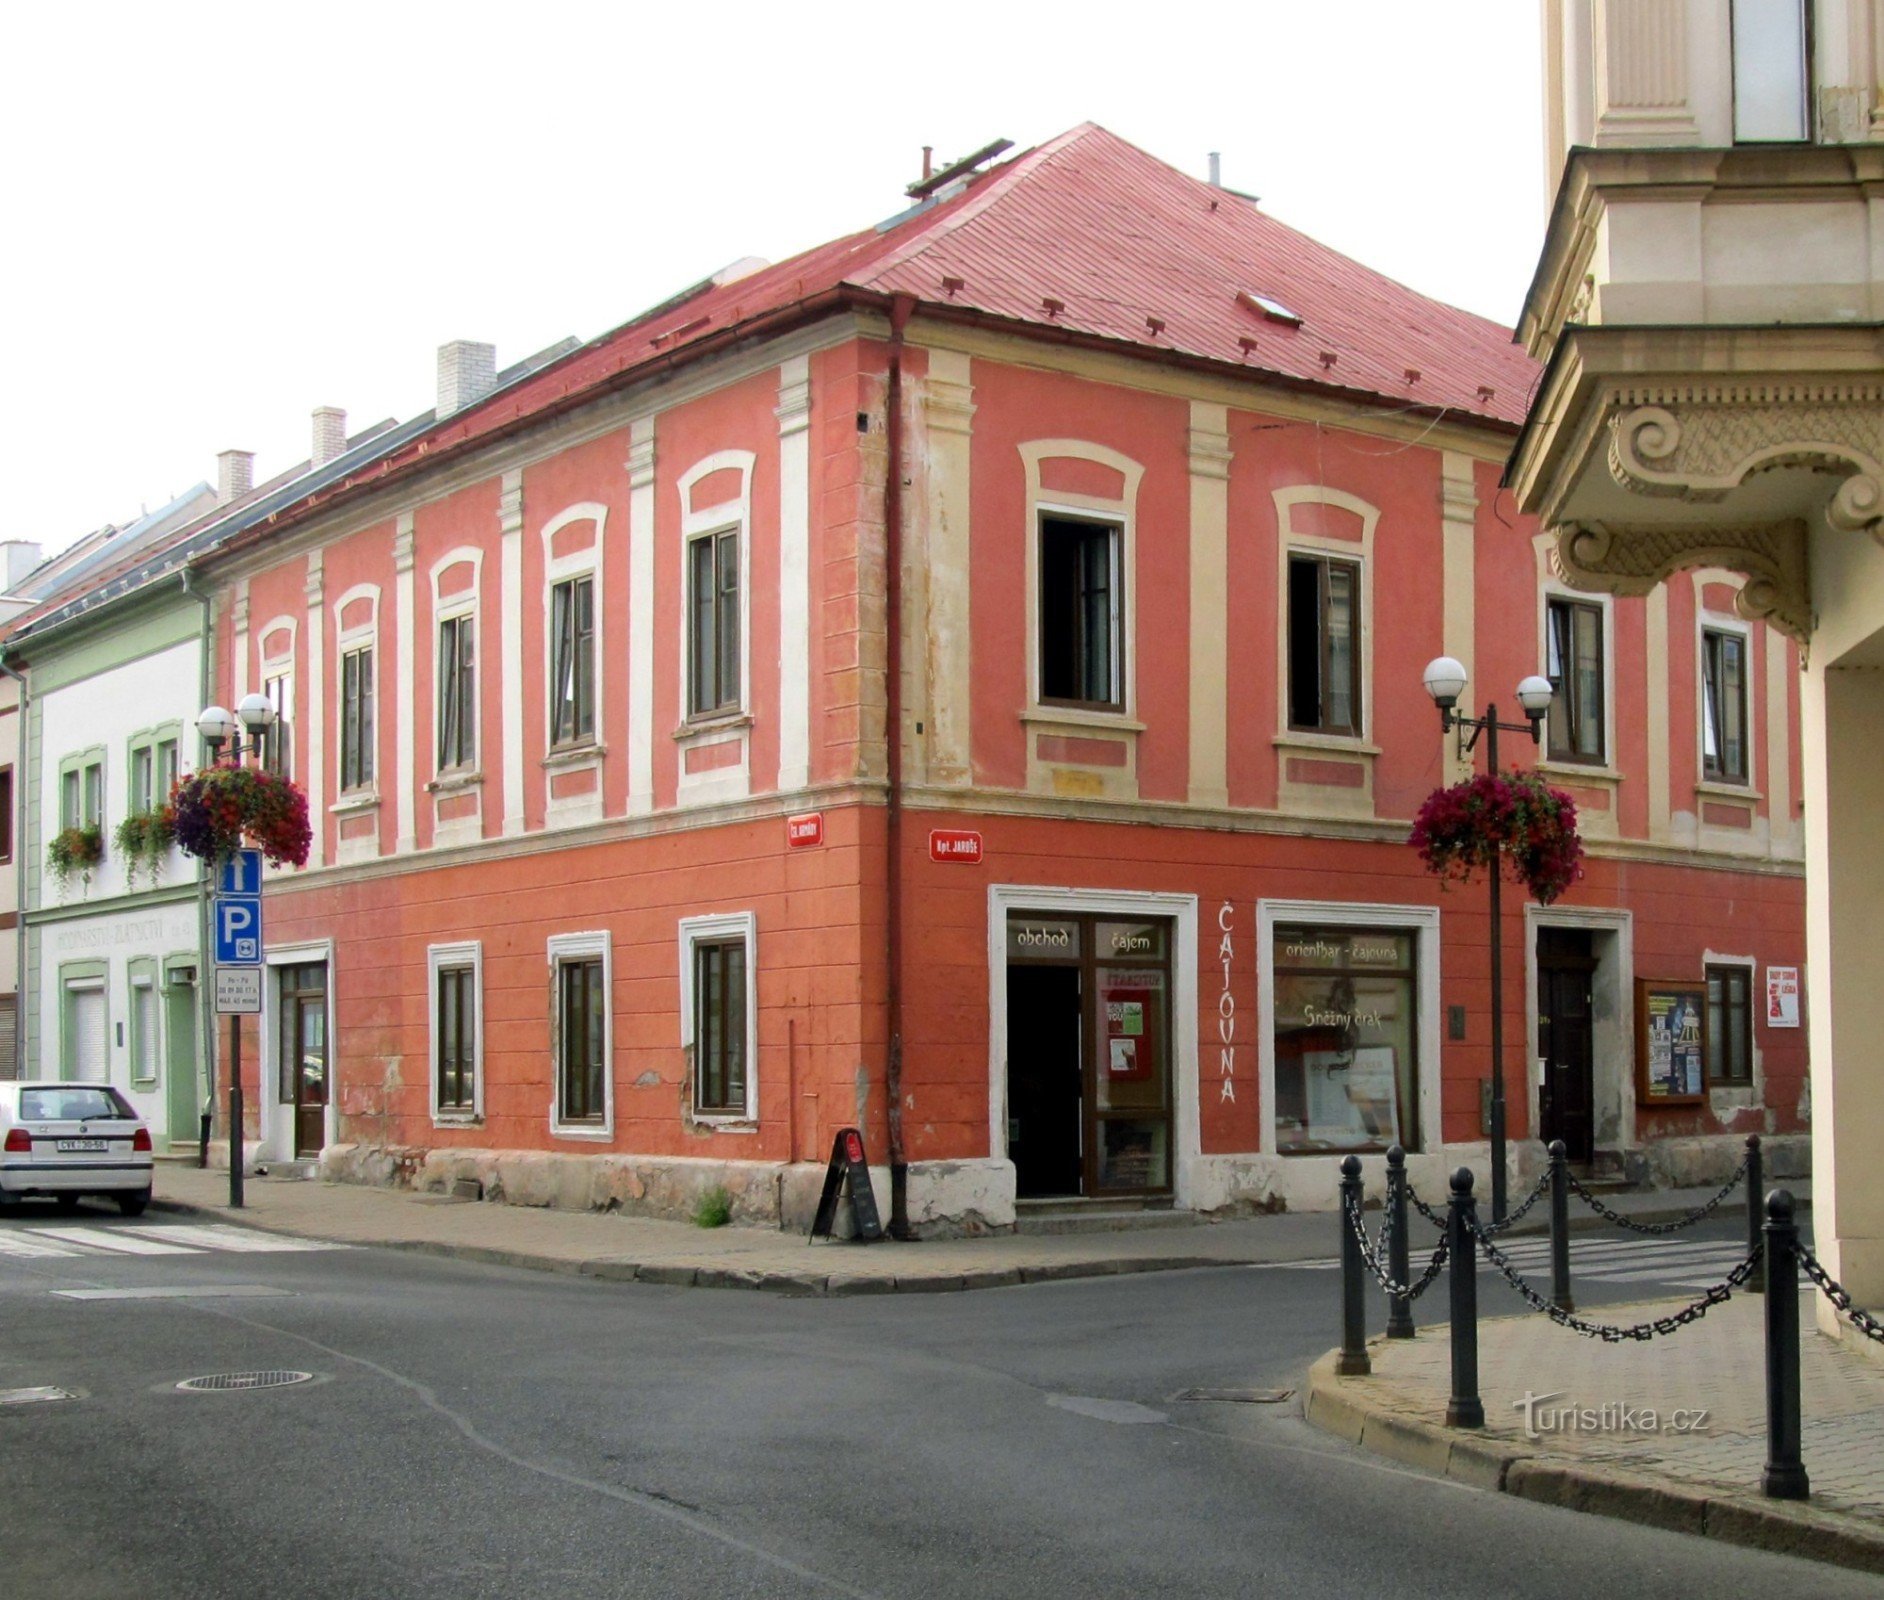 Чайна Sněžný drak у будинку на червоному кутку біля Мірової площі в Кадані.